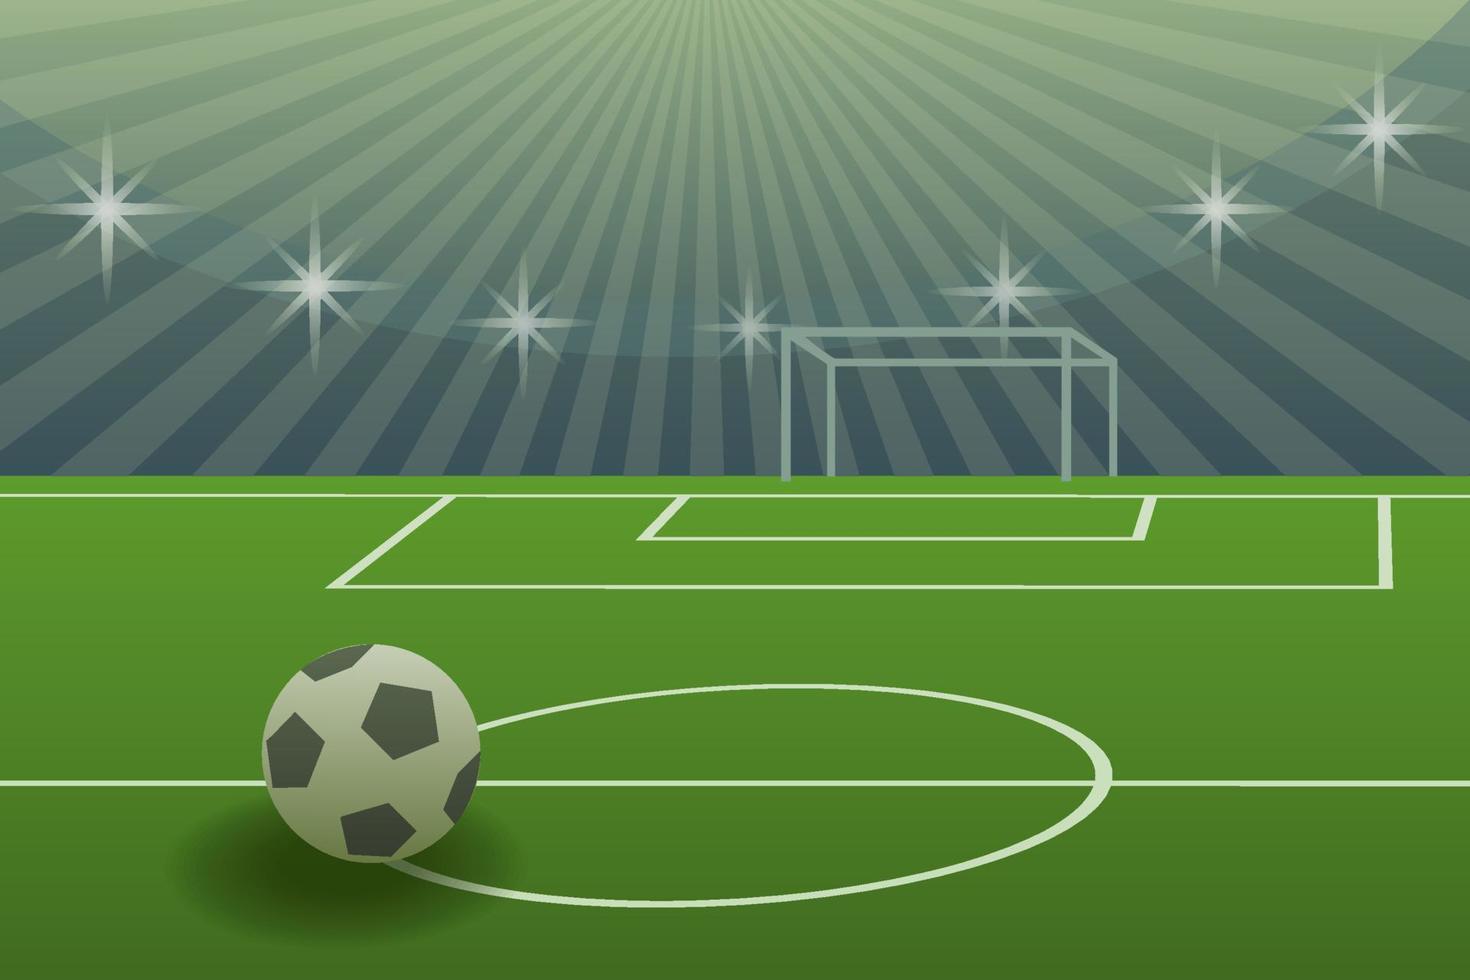 bola de futebol em um estádio em frente aos portões. ilustração em perspectiva, campo de futebol de renderização 3d com bola, portão e holofotes. vetor